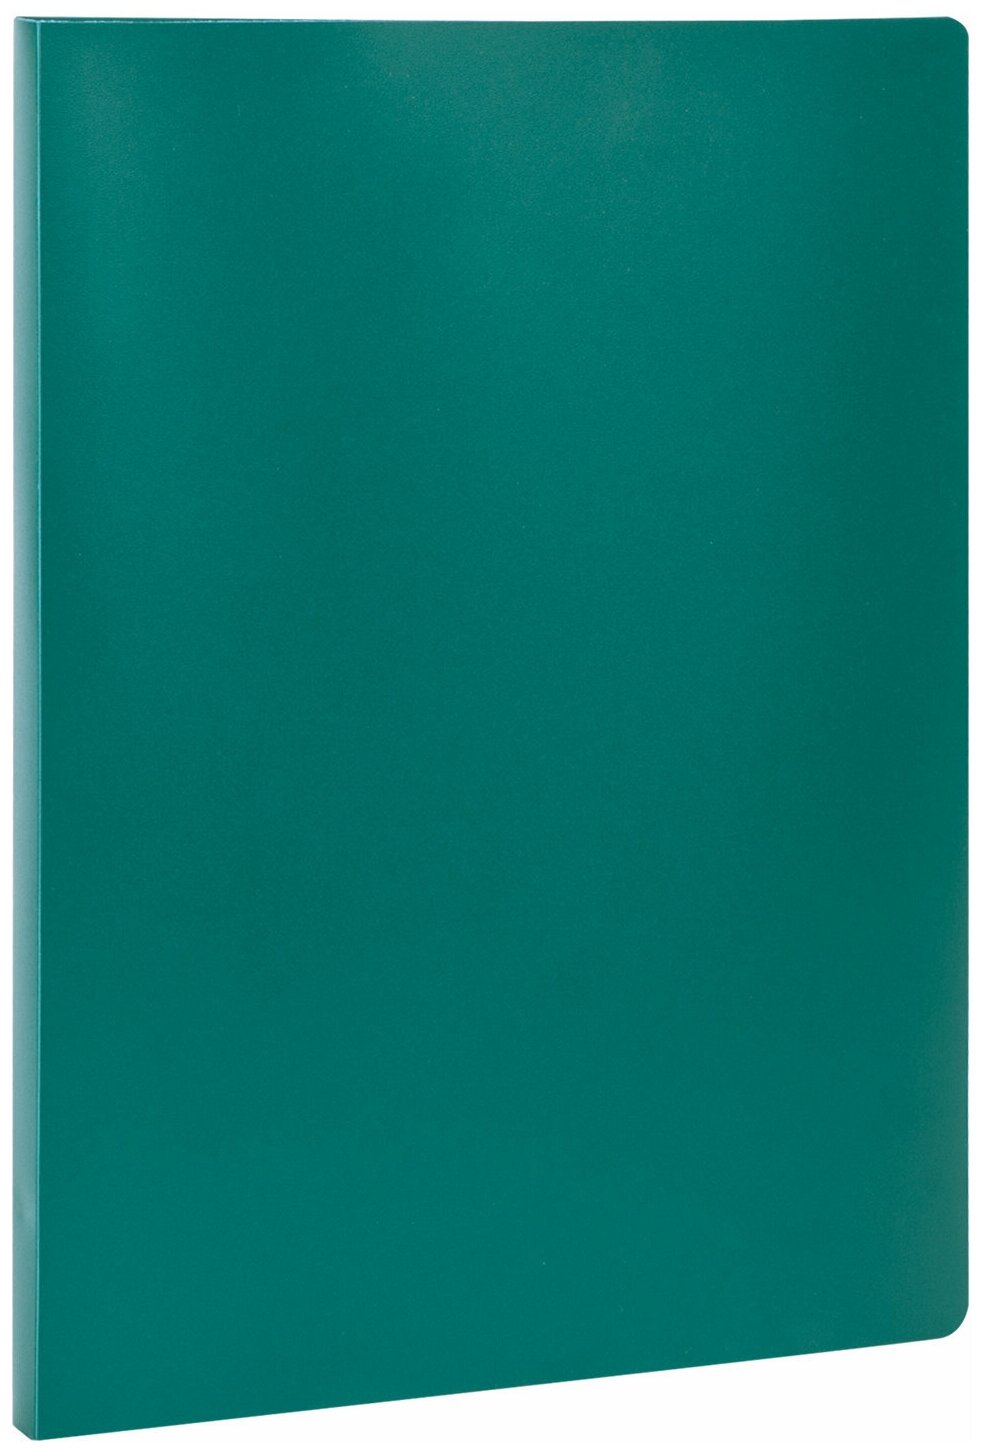 Папка Staff с металлическим скоросшивателем, зеленая, до 100 листов, 0,5 мм (229227)